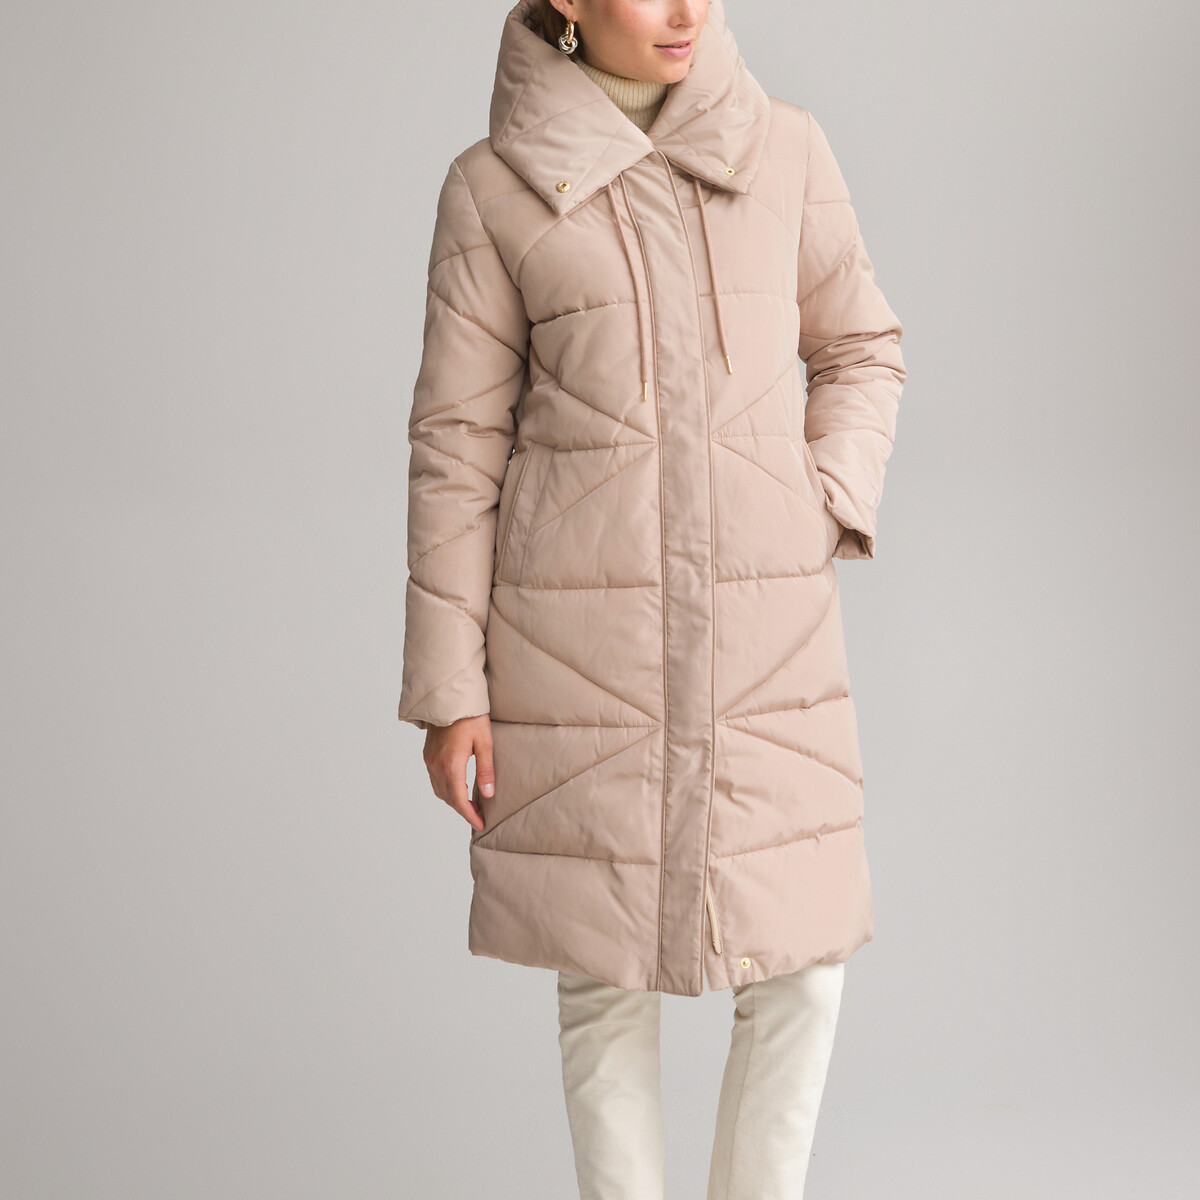 Стеганая куртка средней длины с капюшоном зимняя модель 54 (FR) - 60 (RUS) бежевый стеганая зимняя куртка средней длины с капюшоном desigual черный